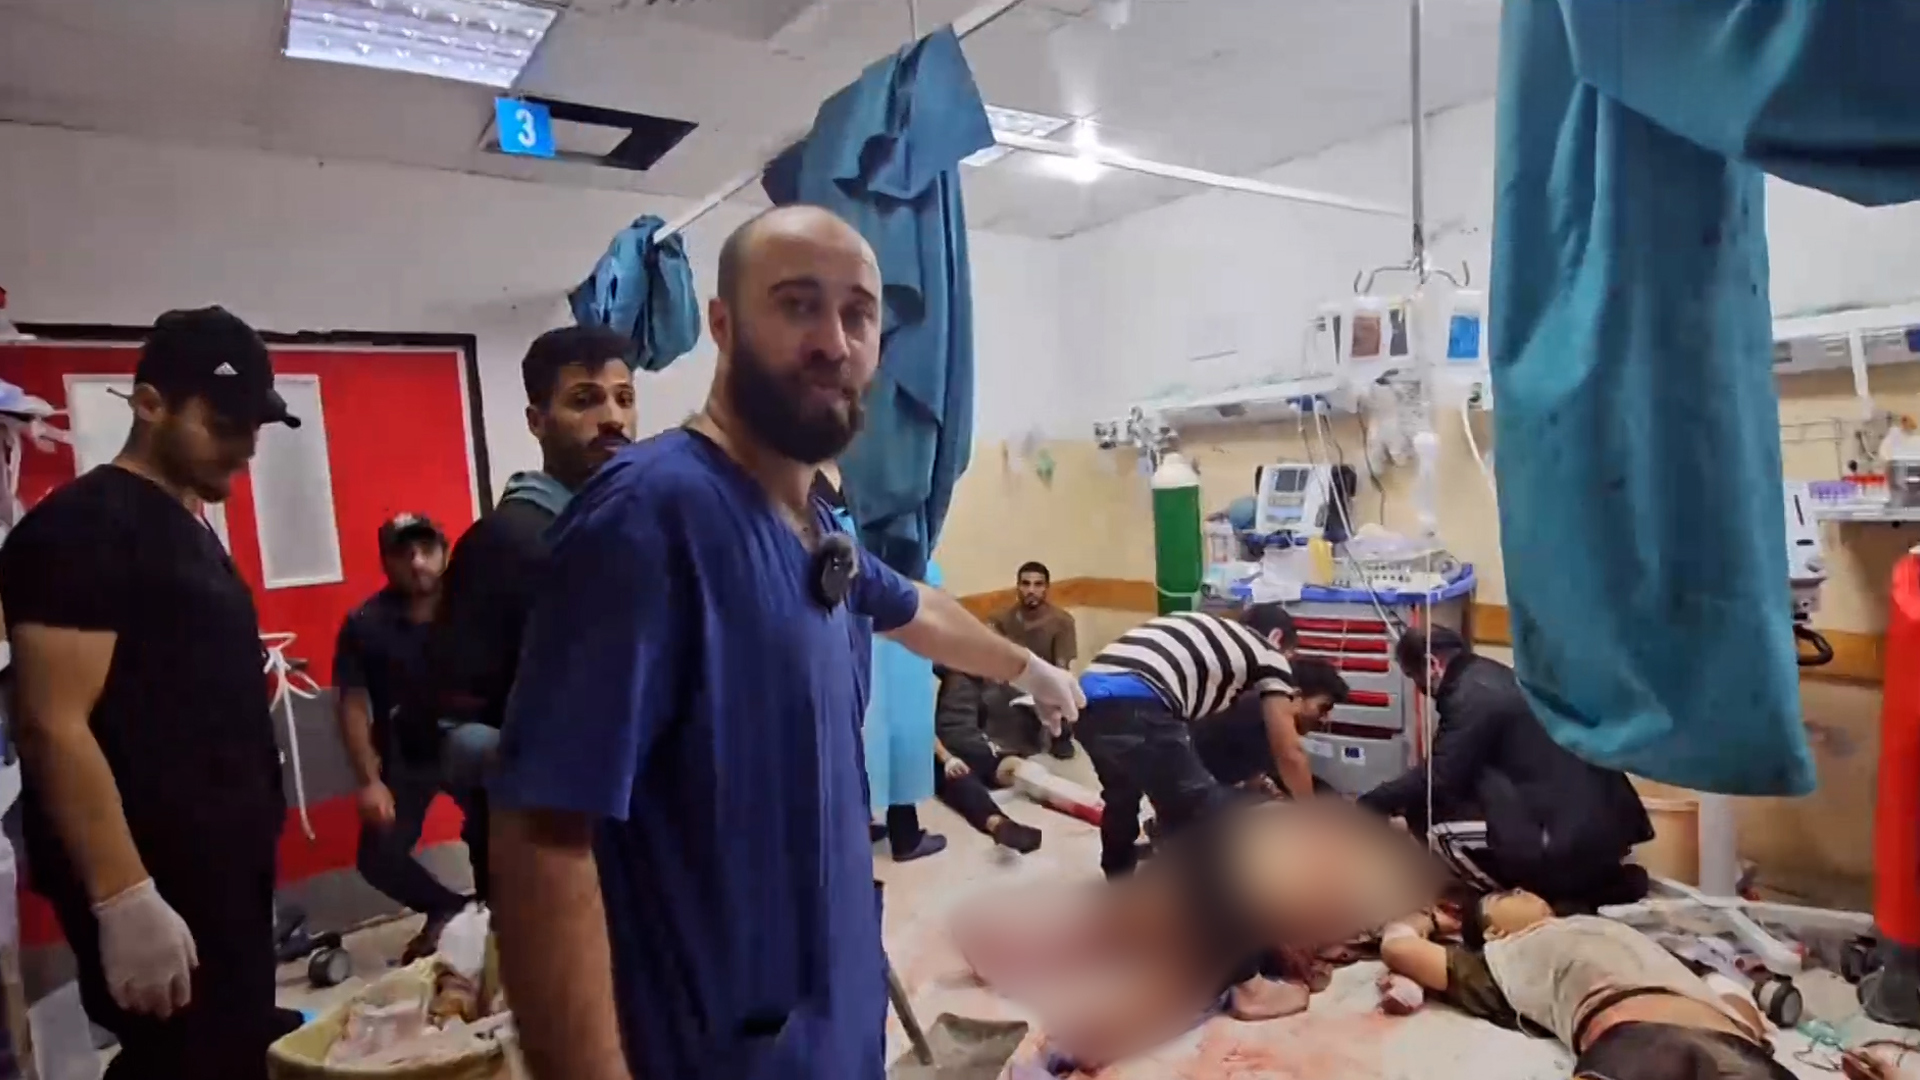 أوضاع كارثية لجرحى في المستشفى الإندونيسي | التقارير الإخبارية – البوكس نيوز